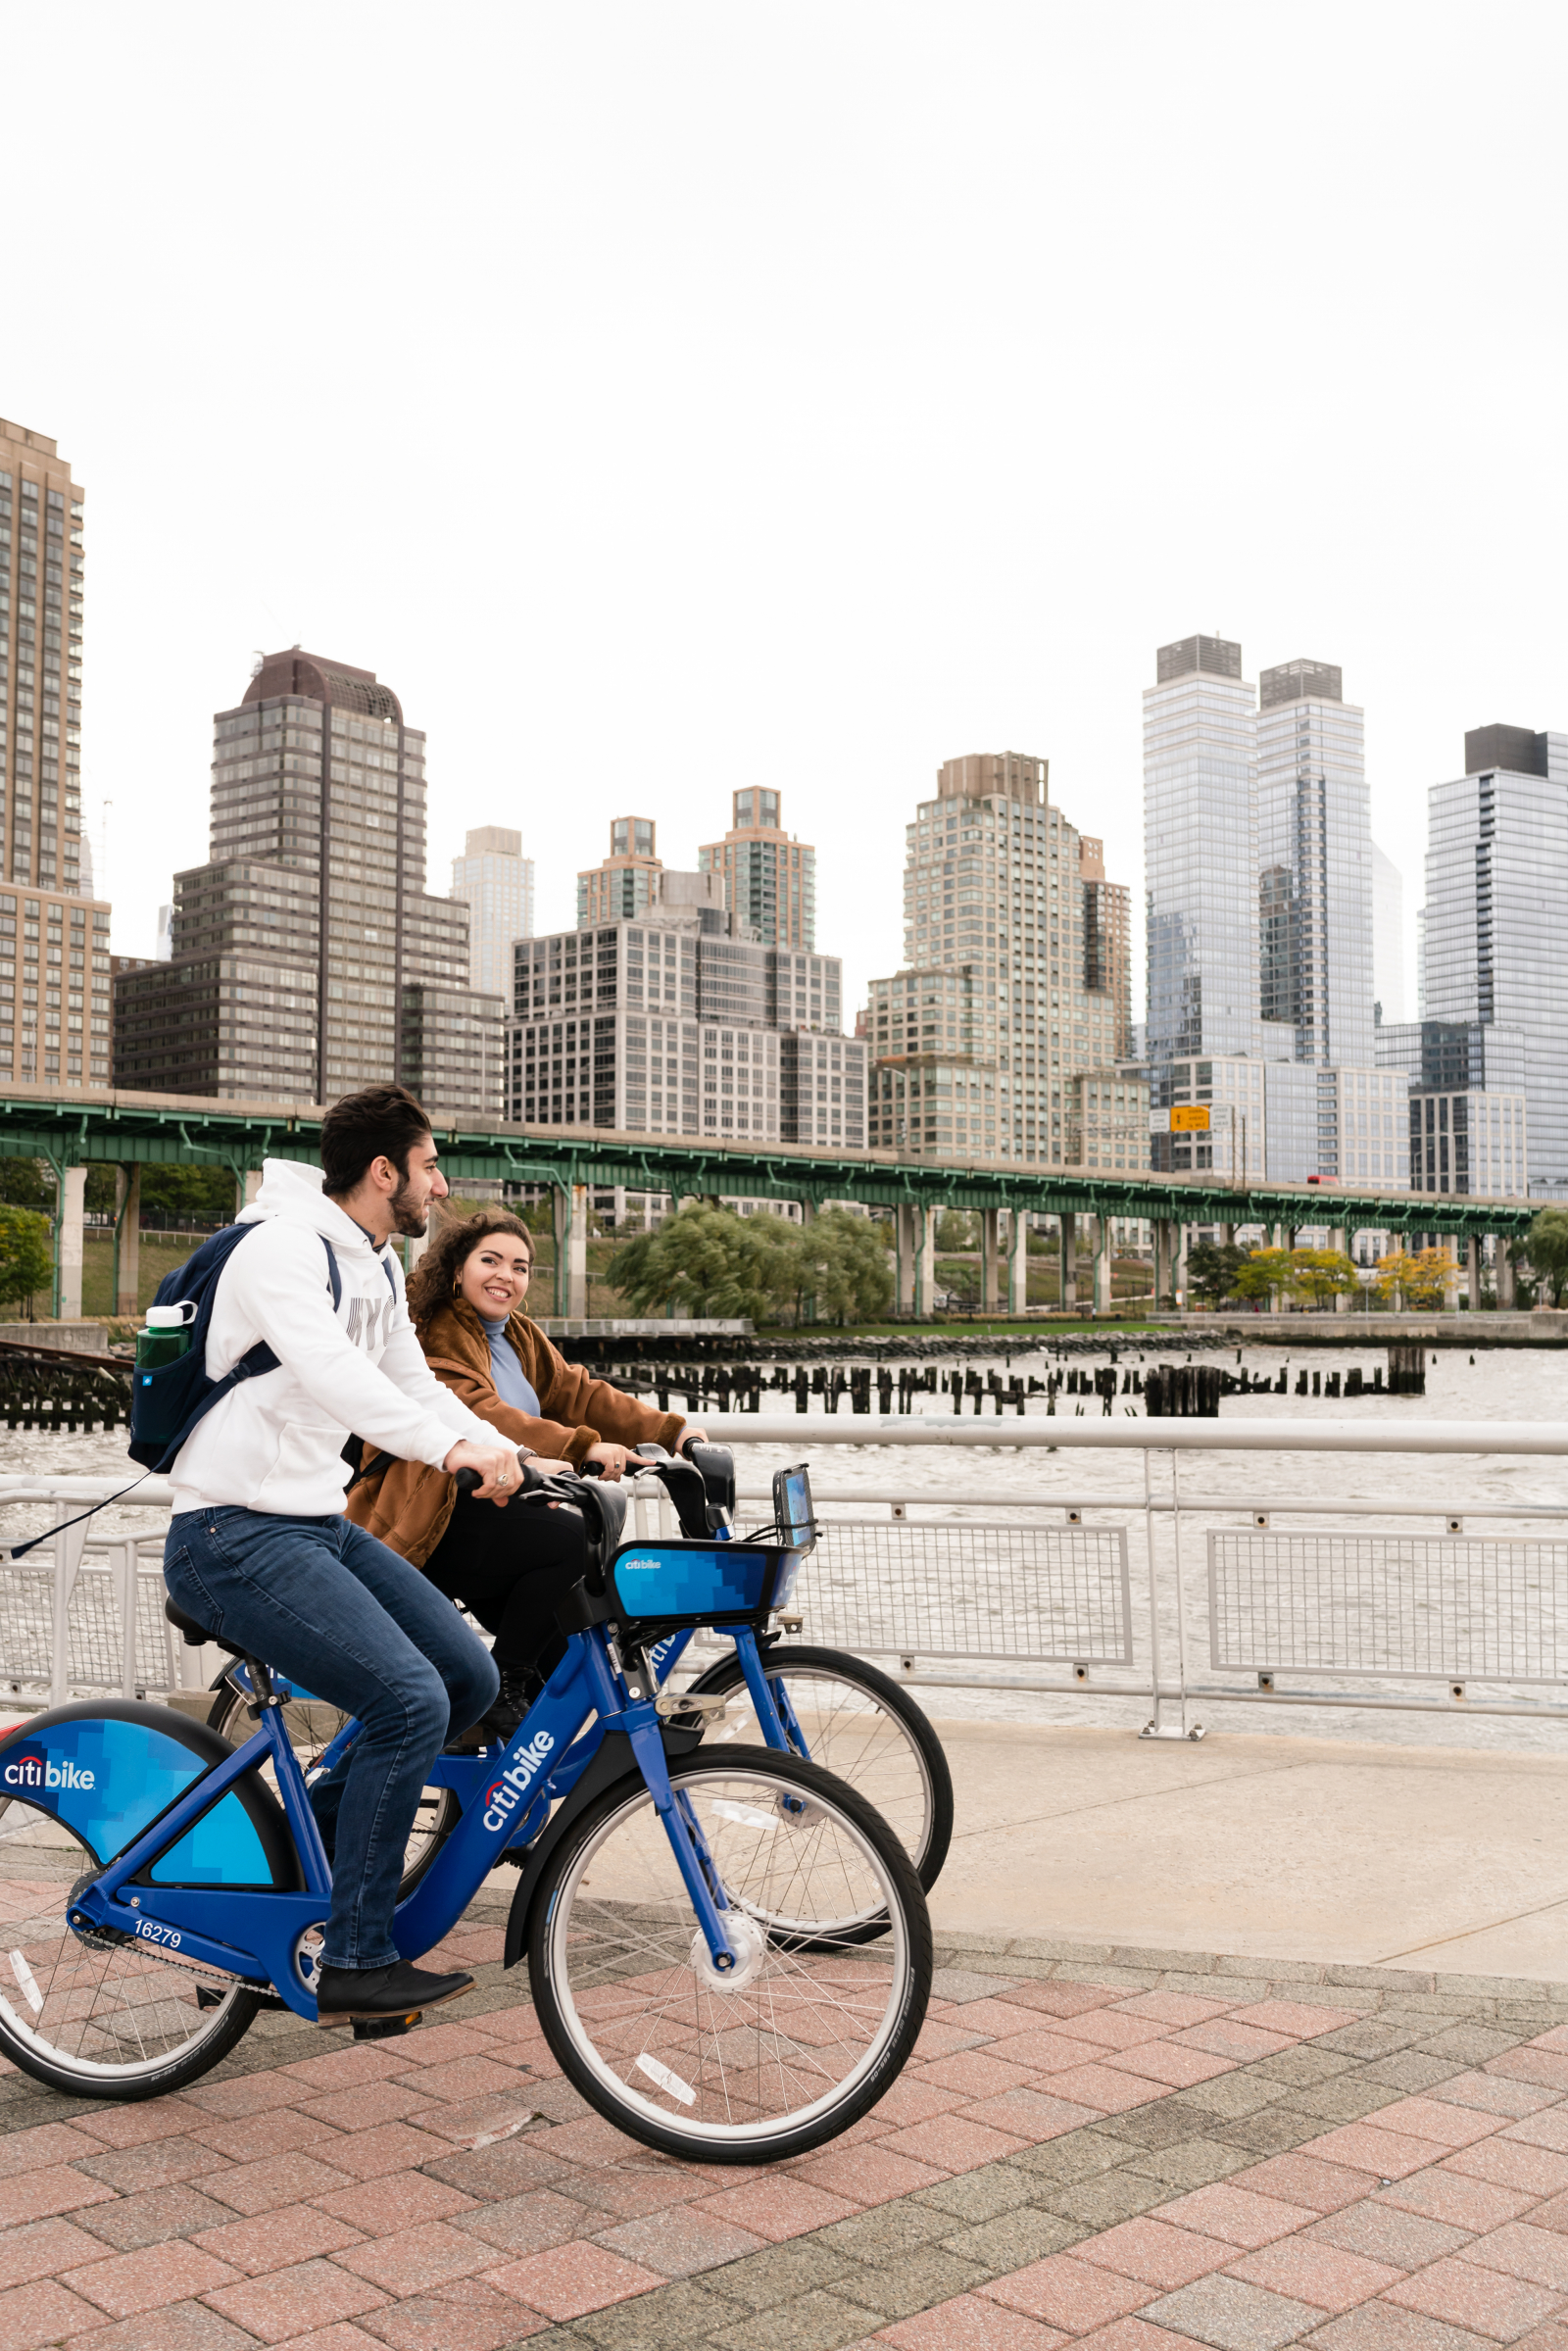 biking in city in front of a skyline